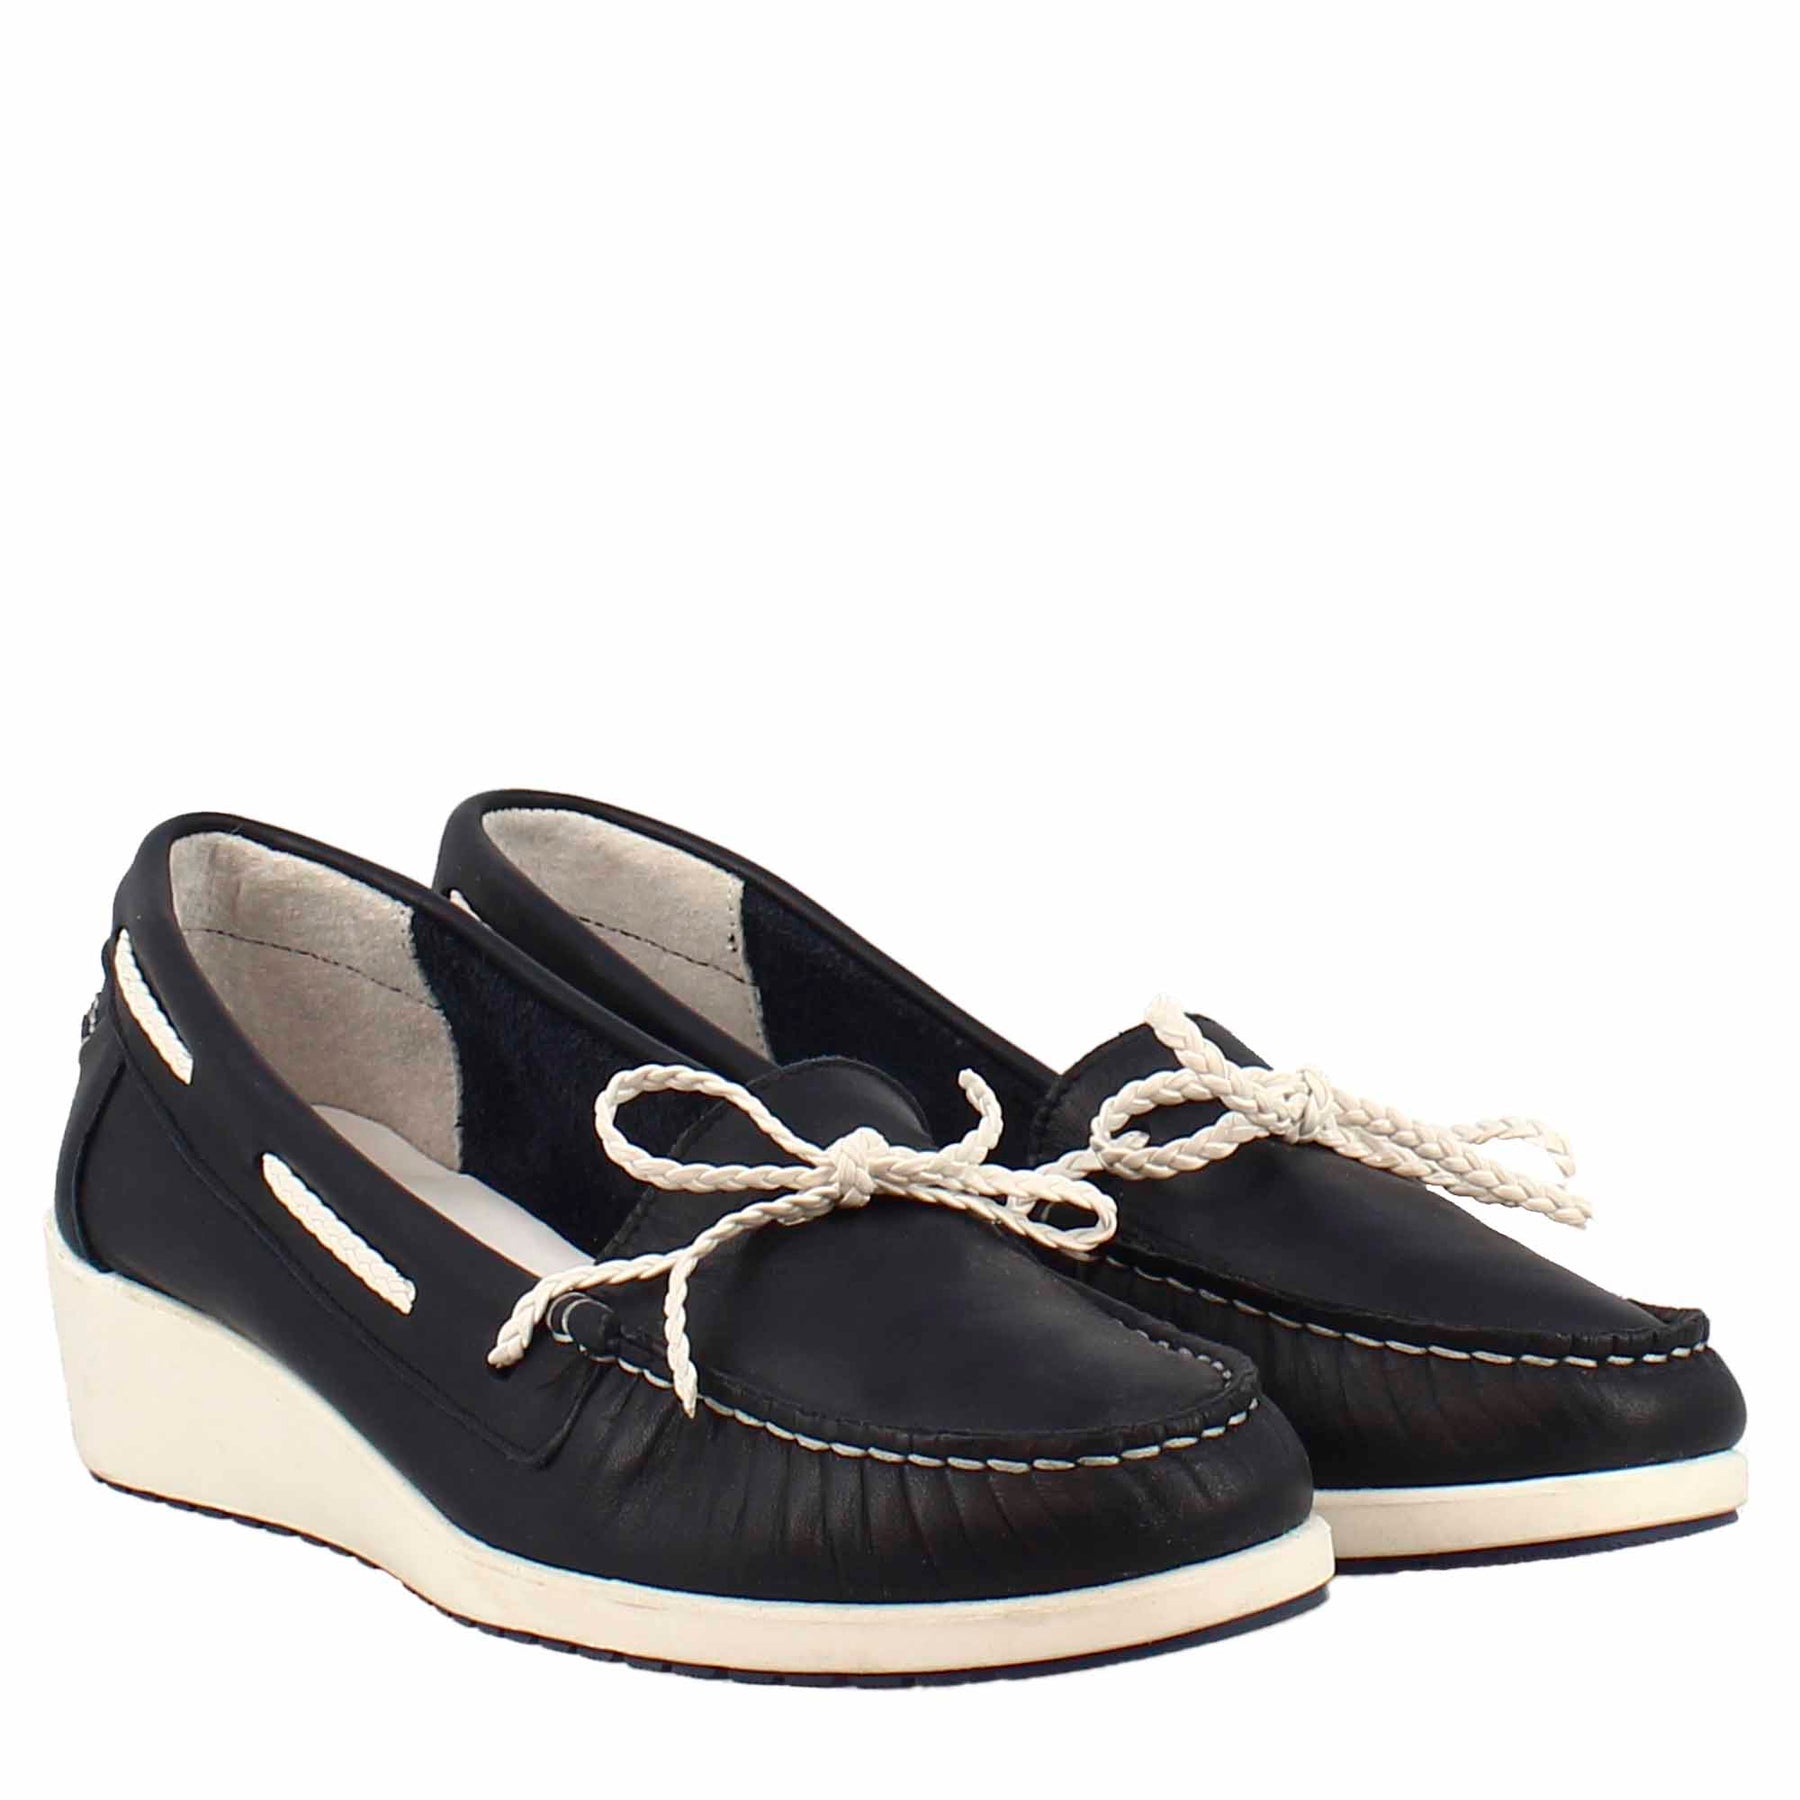 handmade black leather simple unique loafer slips on taseels men shoes